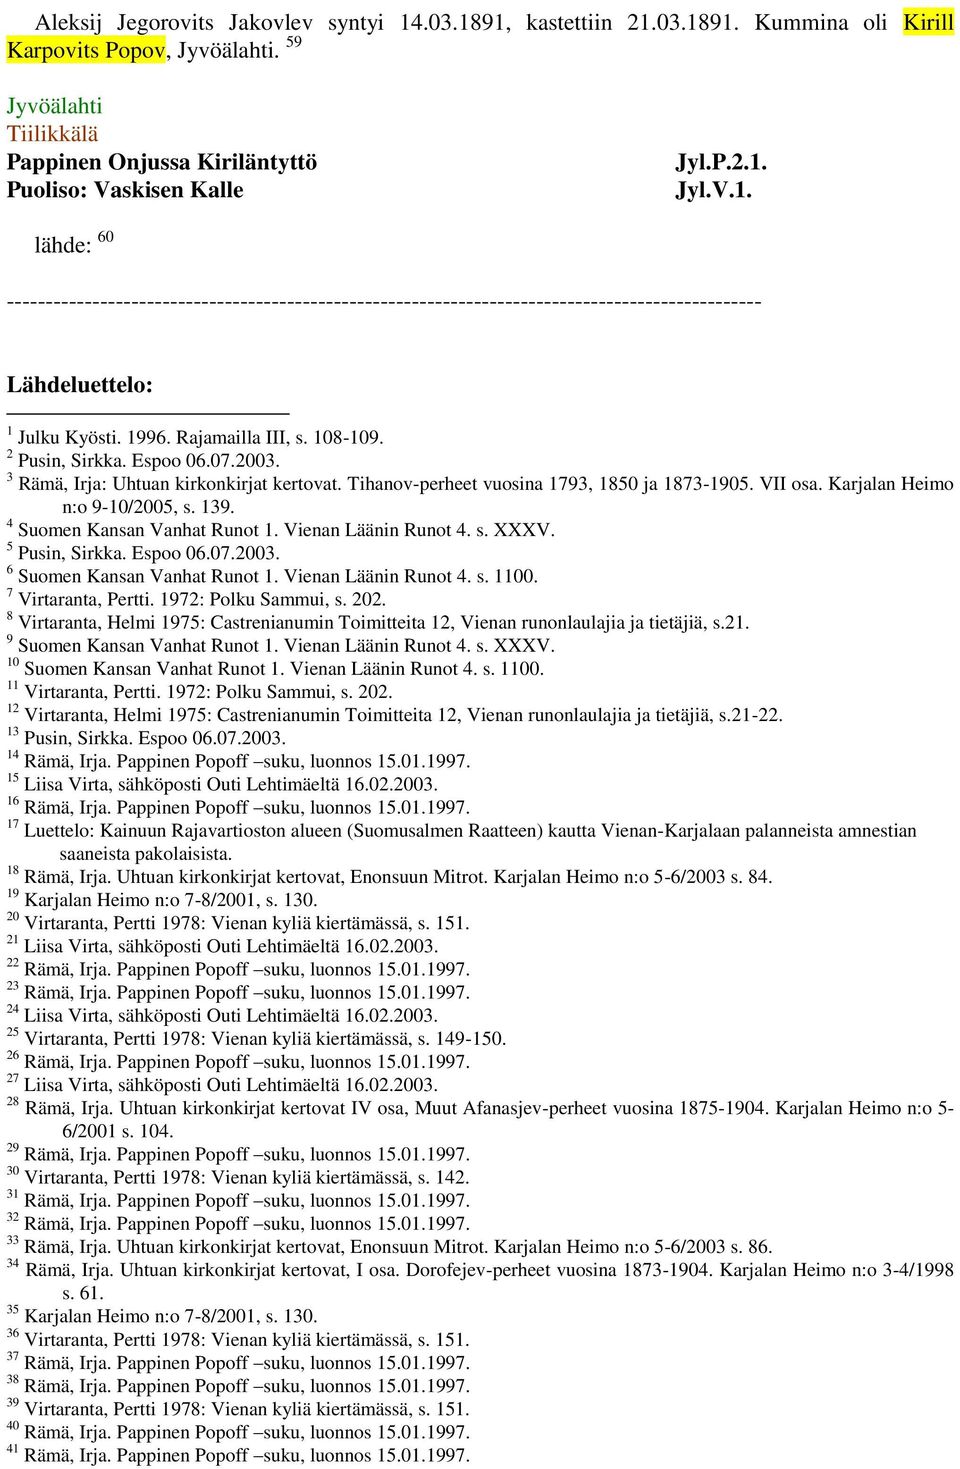 Karjalan Heimo n:o 9-10/2005, s. 139. 4 Suomen Kansan Vanhat Runot 1. Vienan Läänin Runot 4. s. XXXV. 5 Pusin, Sirkka. Espoo 06.07.2003. 6 Suomen Kansan Vanhat Runot 1. Vienan Läänin Runot 4. s. 1100.